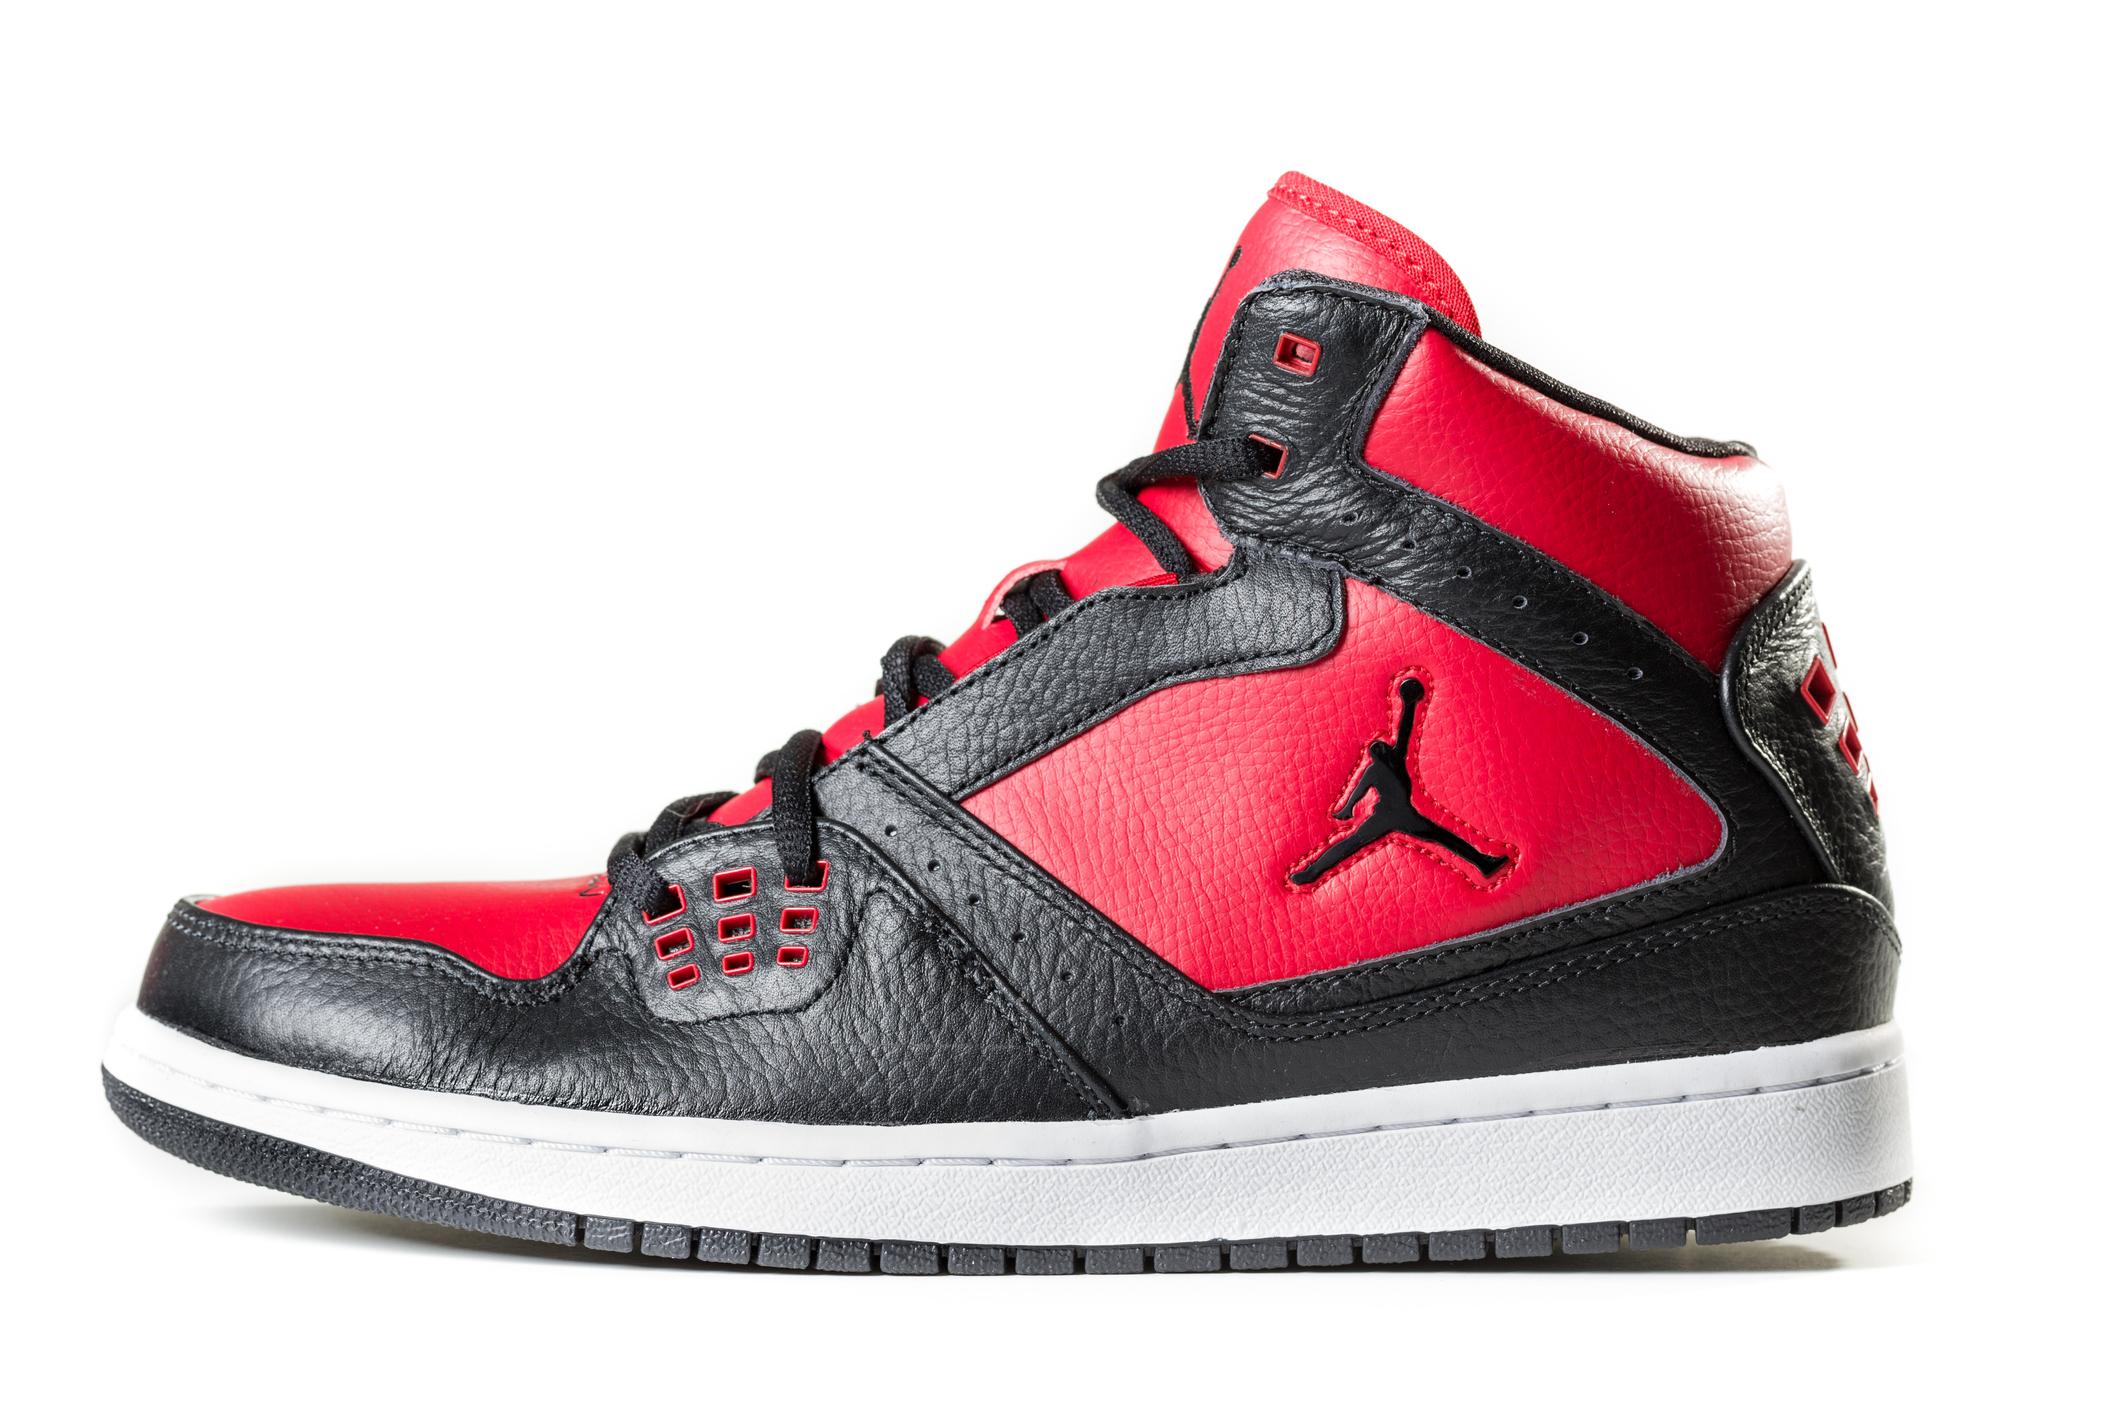 Sneakers, Air Jordan, Sneaker, Flying Jordan, Jupman, Nba Shoes